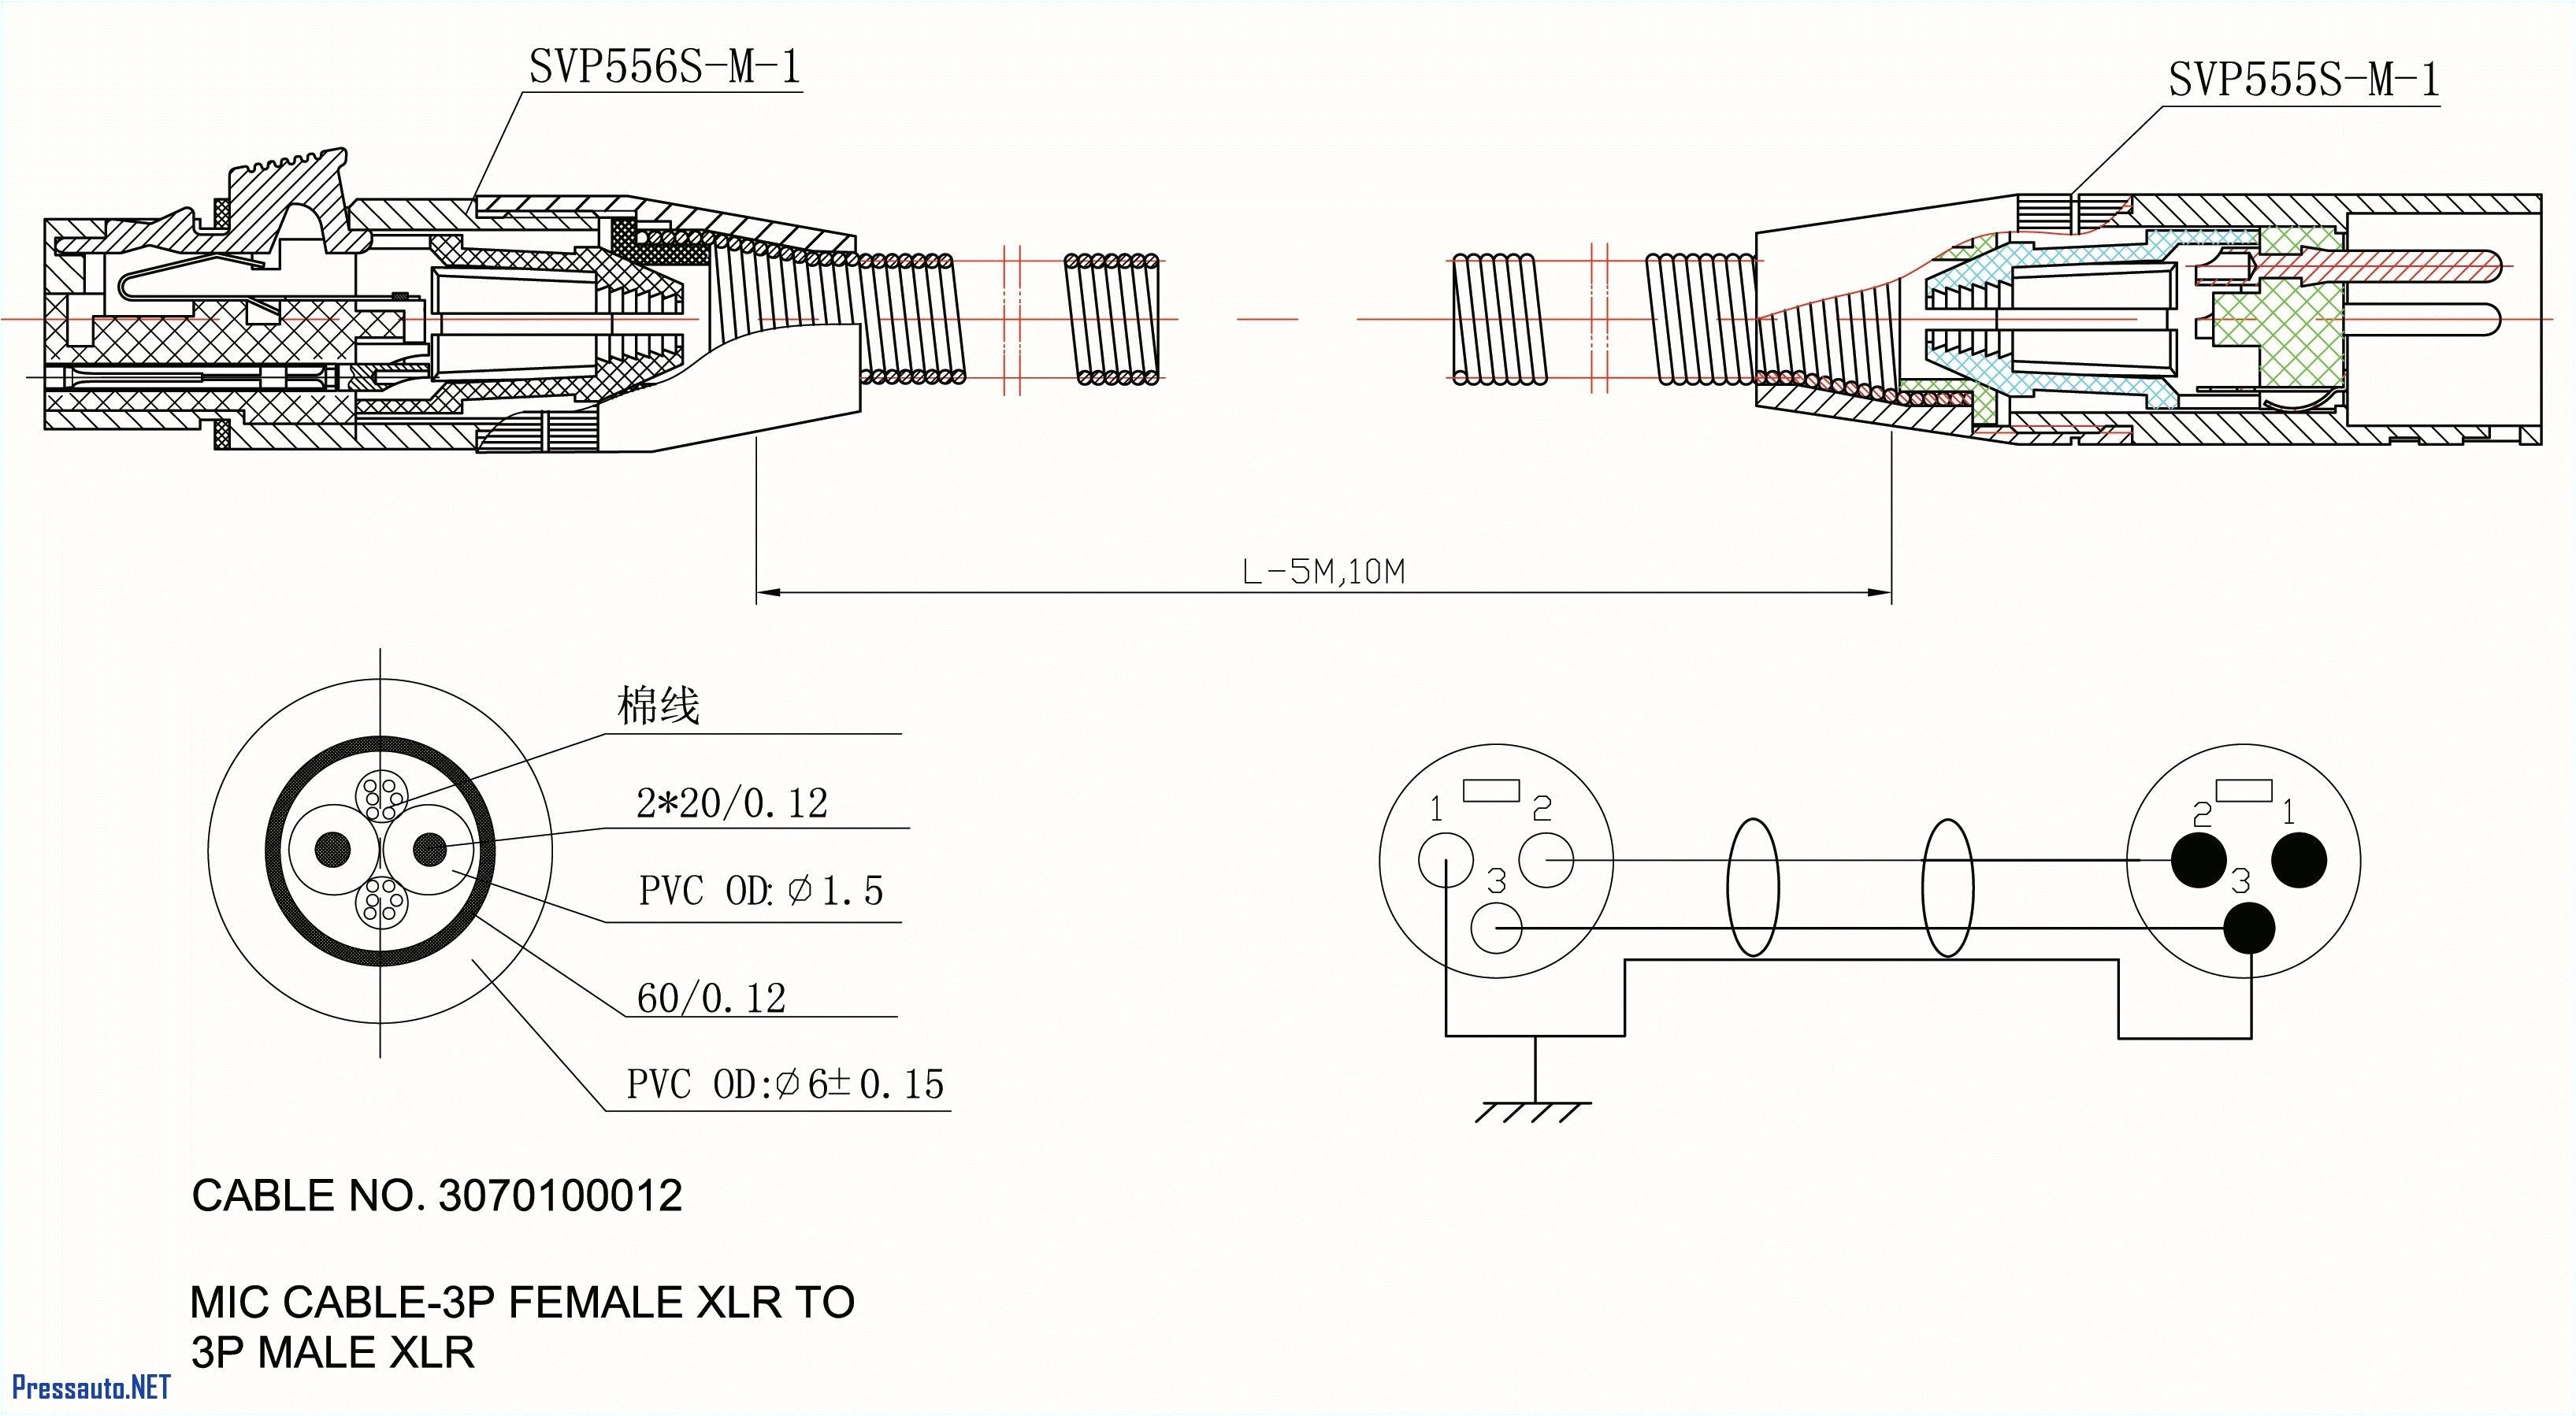 best of wiring diagram 7 pin trailer plug toyota diagrams digramssample diagramimages